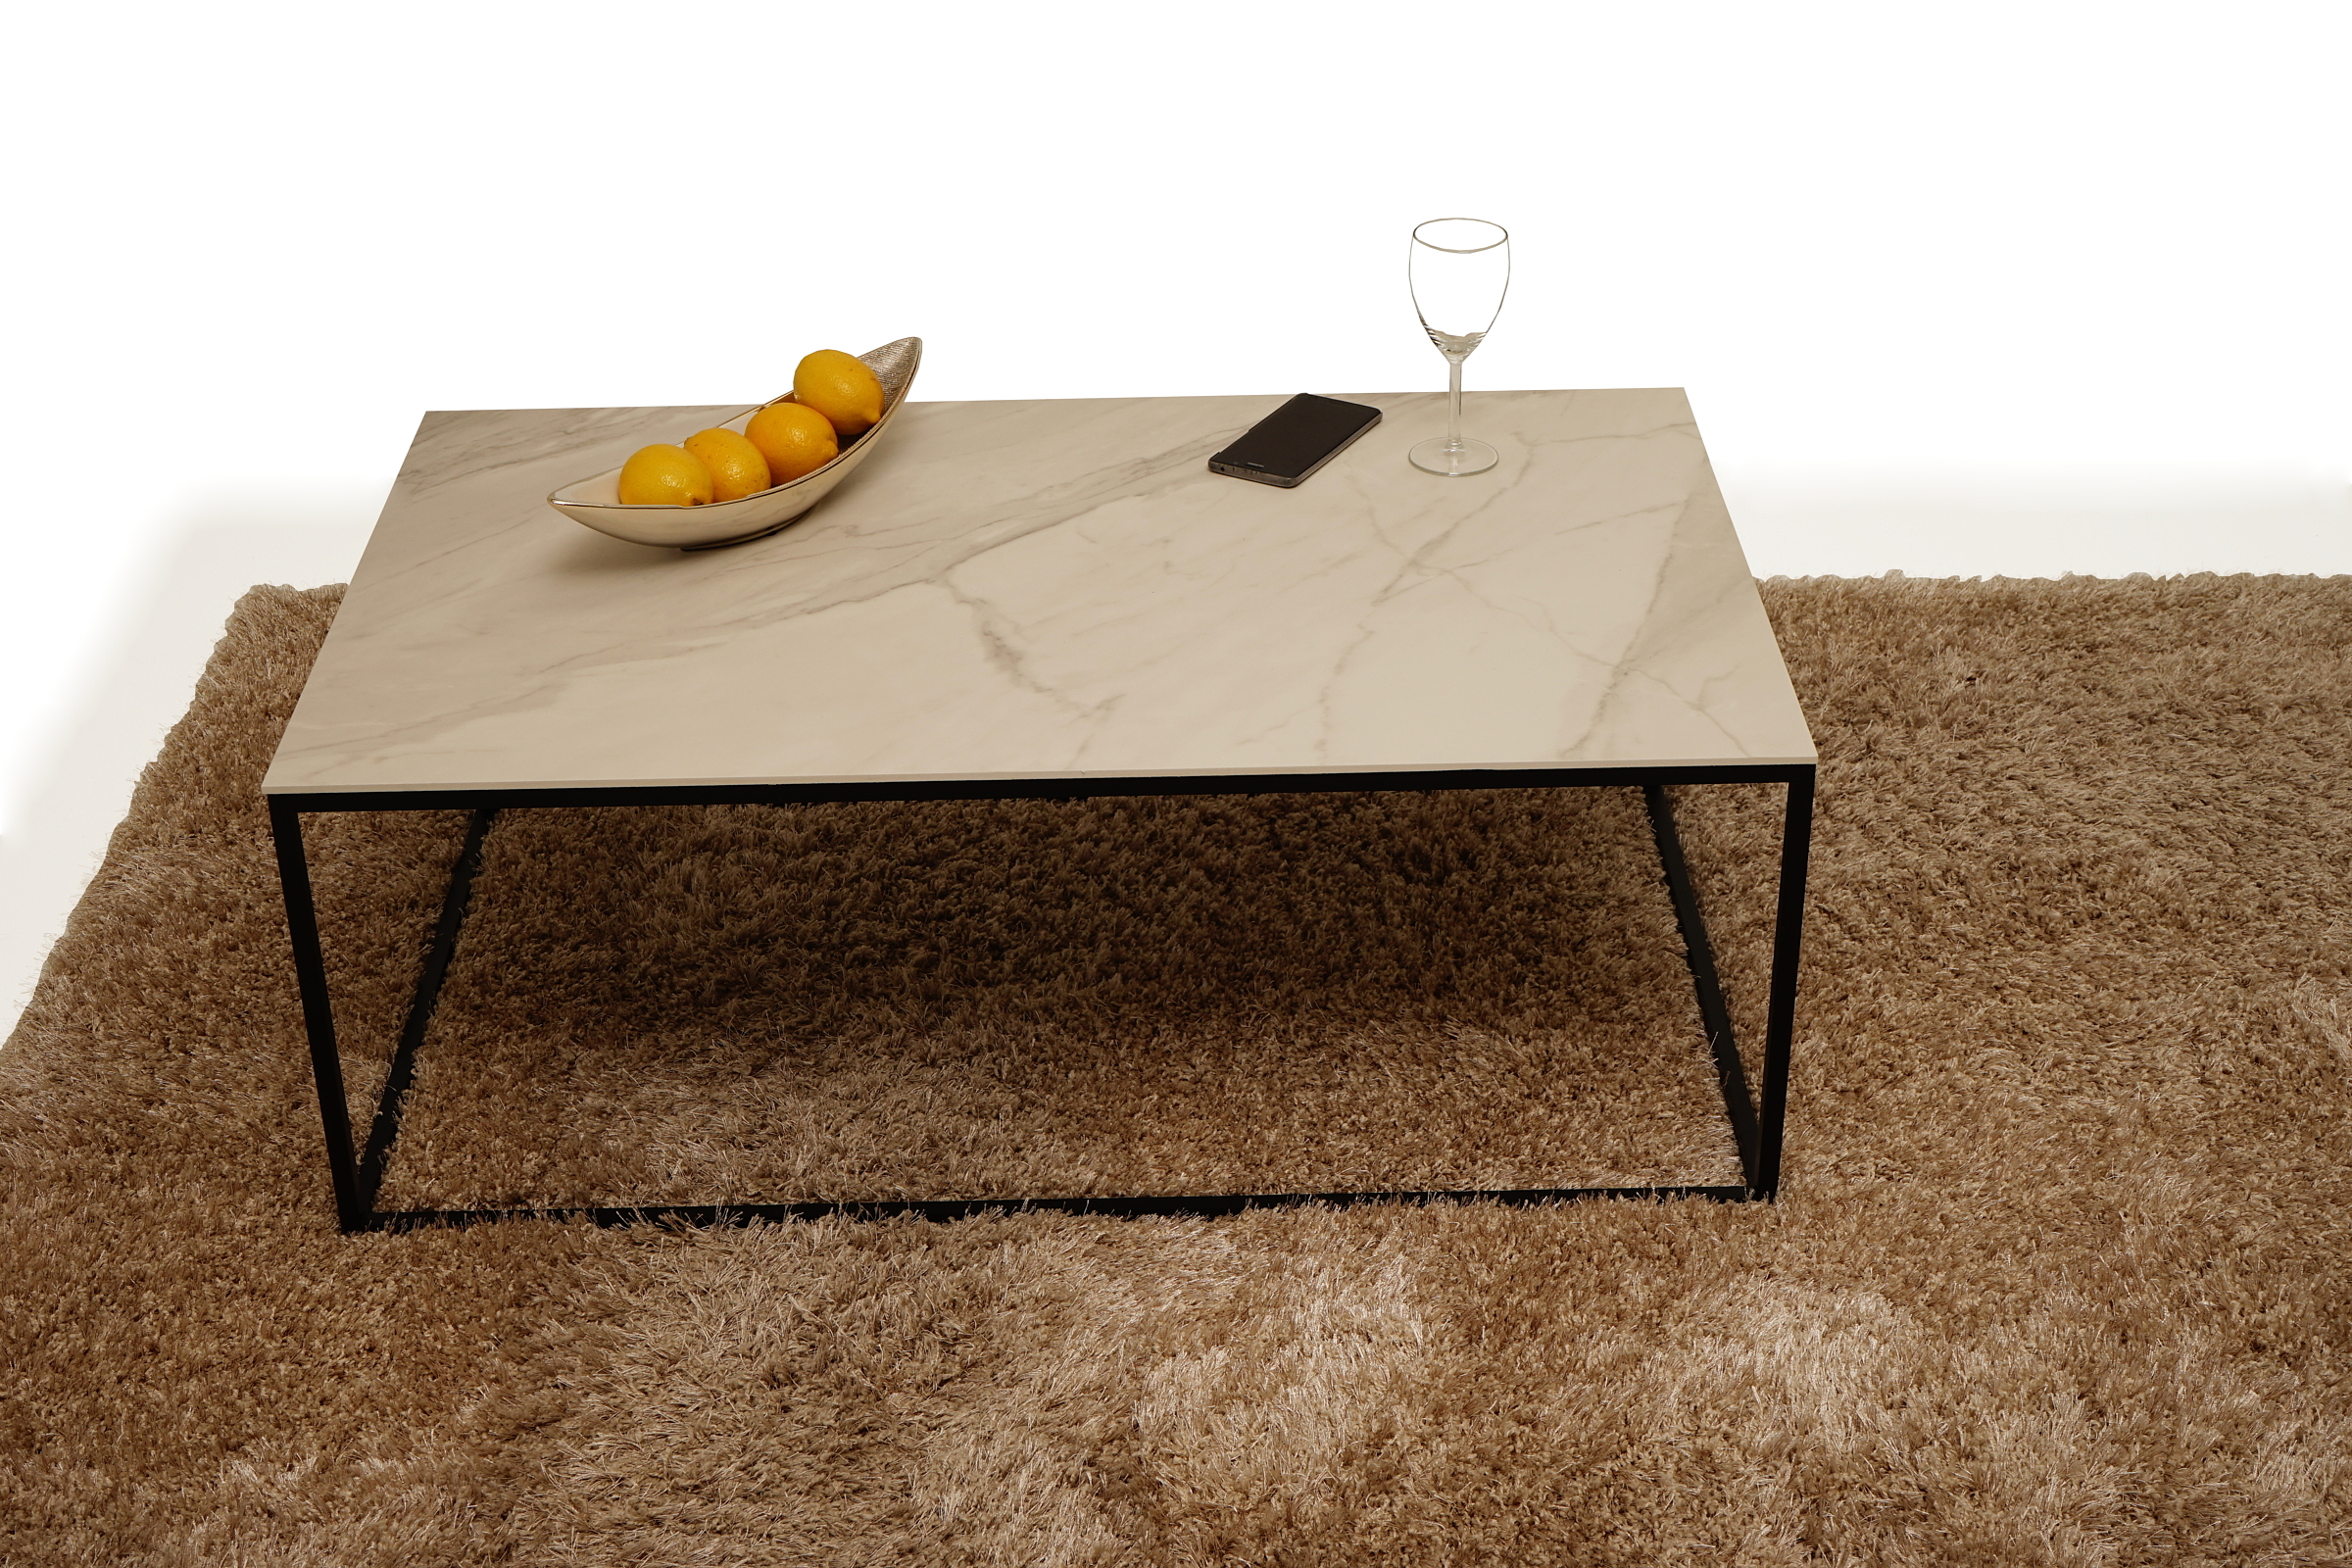 Lb5 - nowoczesny metalowy stolik kawowy ława - na stoliku patera z owocami metalowa w kolorze srebrnym w połysku - zestaw uzupełnia brązowy dywan włochacz z długim włosem